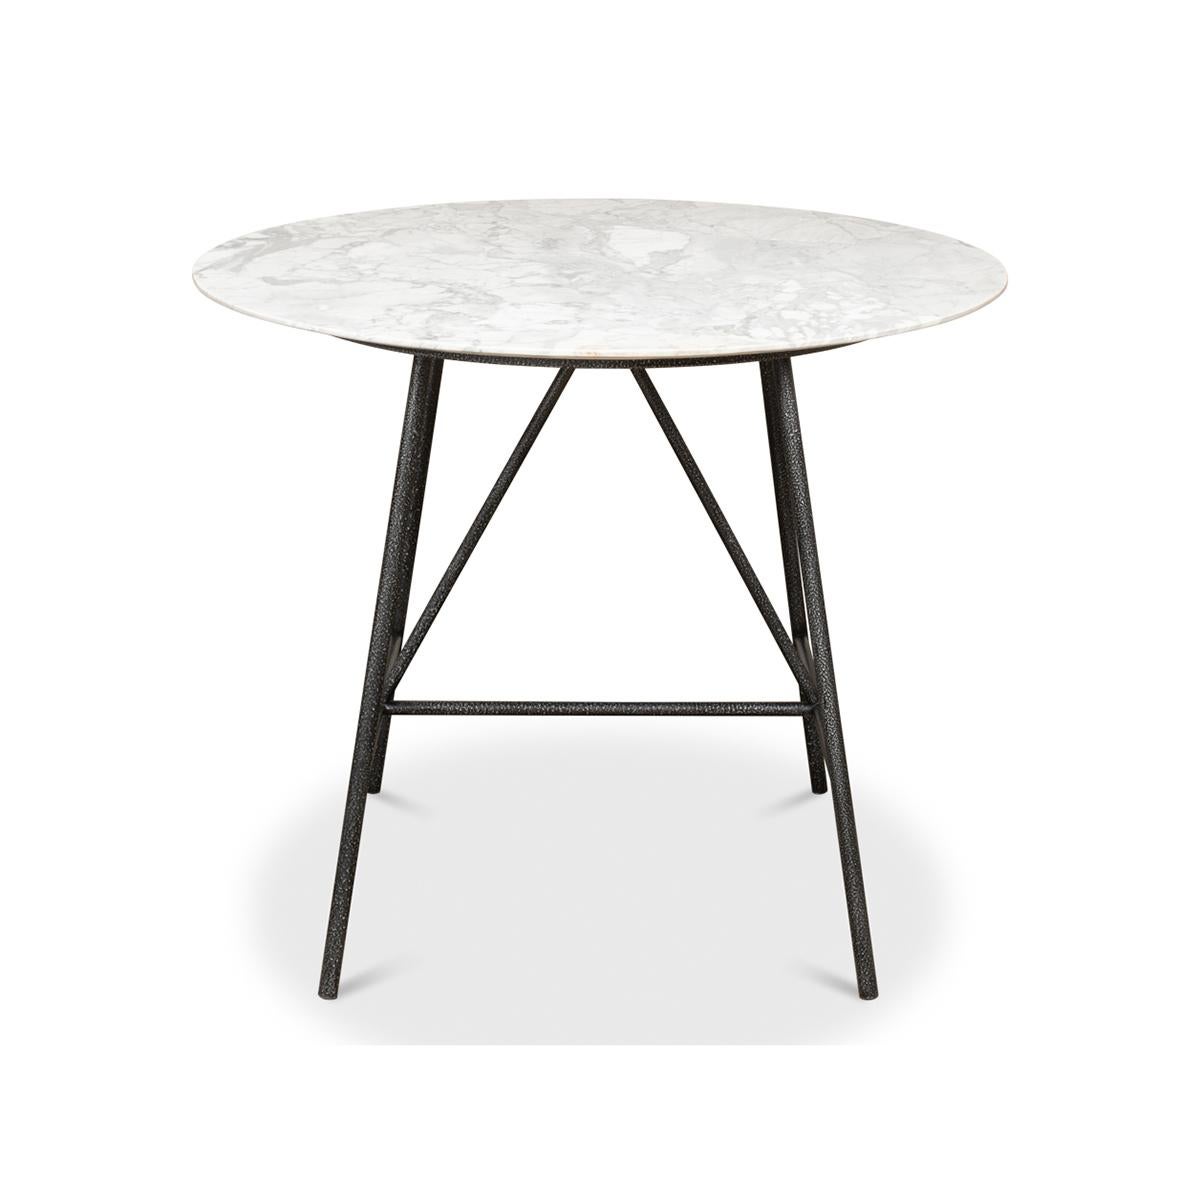 Mit einer runden Platte aus italienischem Marmor auf einem schwarz lackierten Eisenfuß. 

Ein klarer und moderner Tisch im europäischen Café-Stil.

Abmessungen: 36